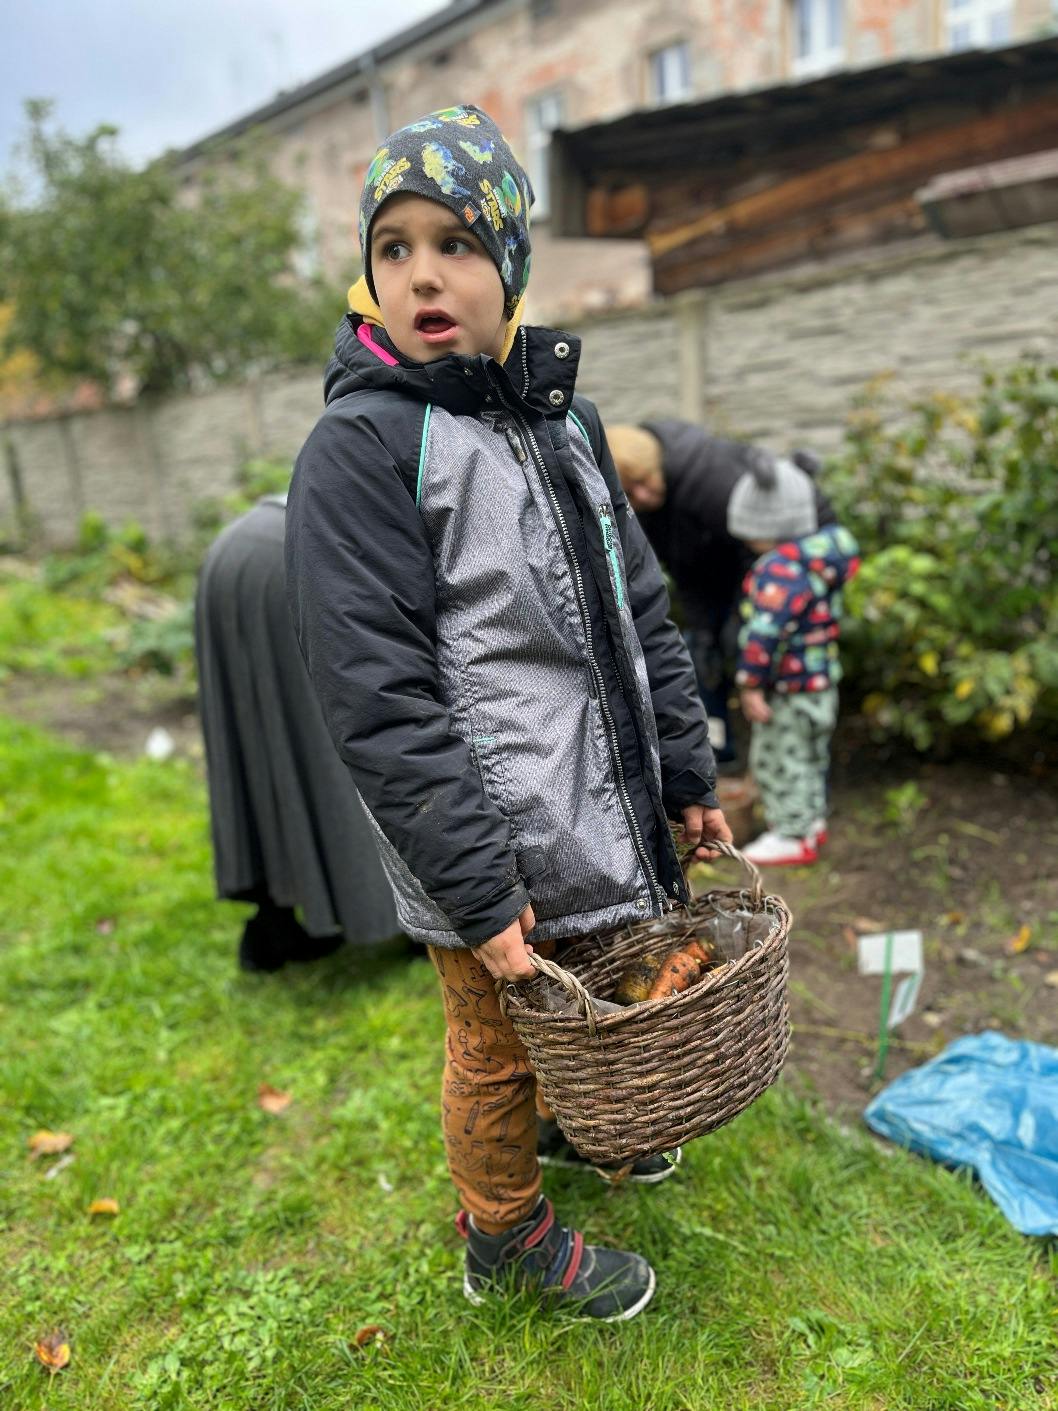 Jesienne prace w ogrodzie | Chłopiec w ogrodzie trzyma koszyk z marchewkami.jpeg